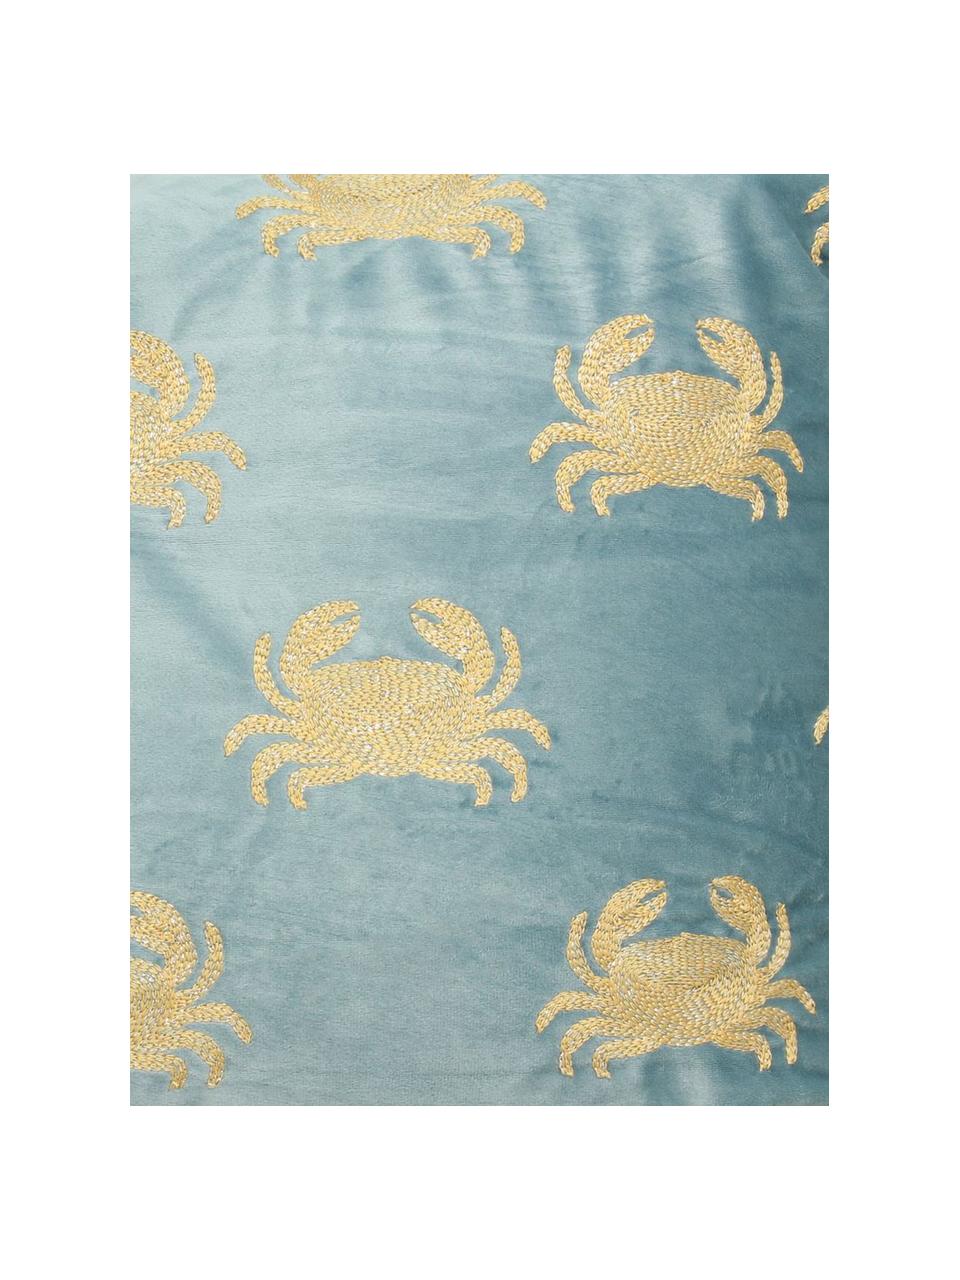 Cojín bordado de terciopelo Crab, con relleno, 100% terciopelo

El color del terciopelo puede variar dependiendo de la luz y la dirección en que se encuentre, Azul, dorado, An 40 x L 55 cm